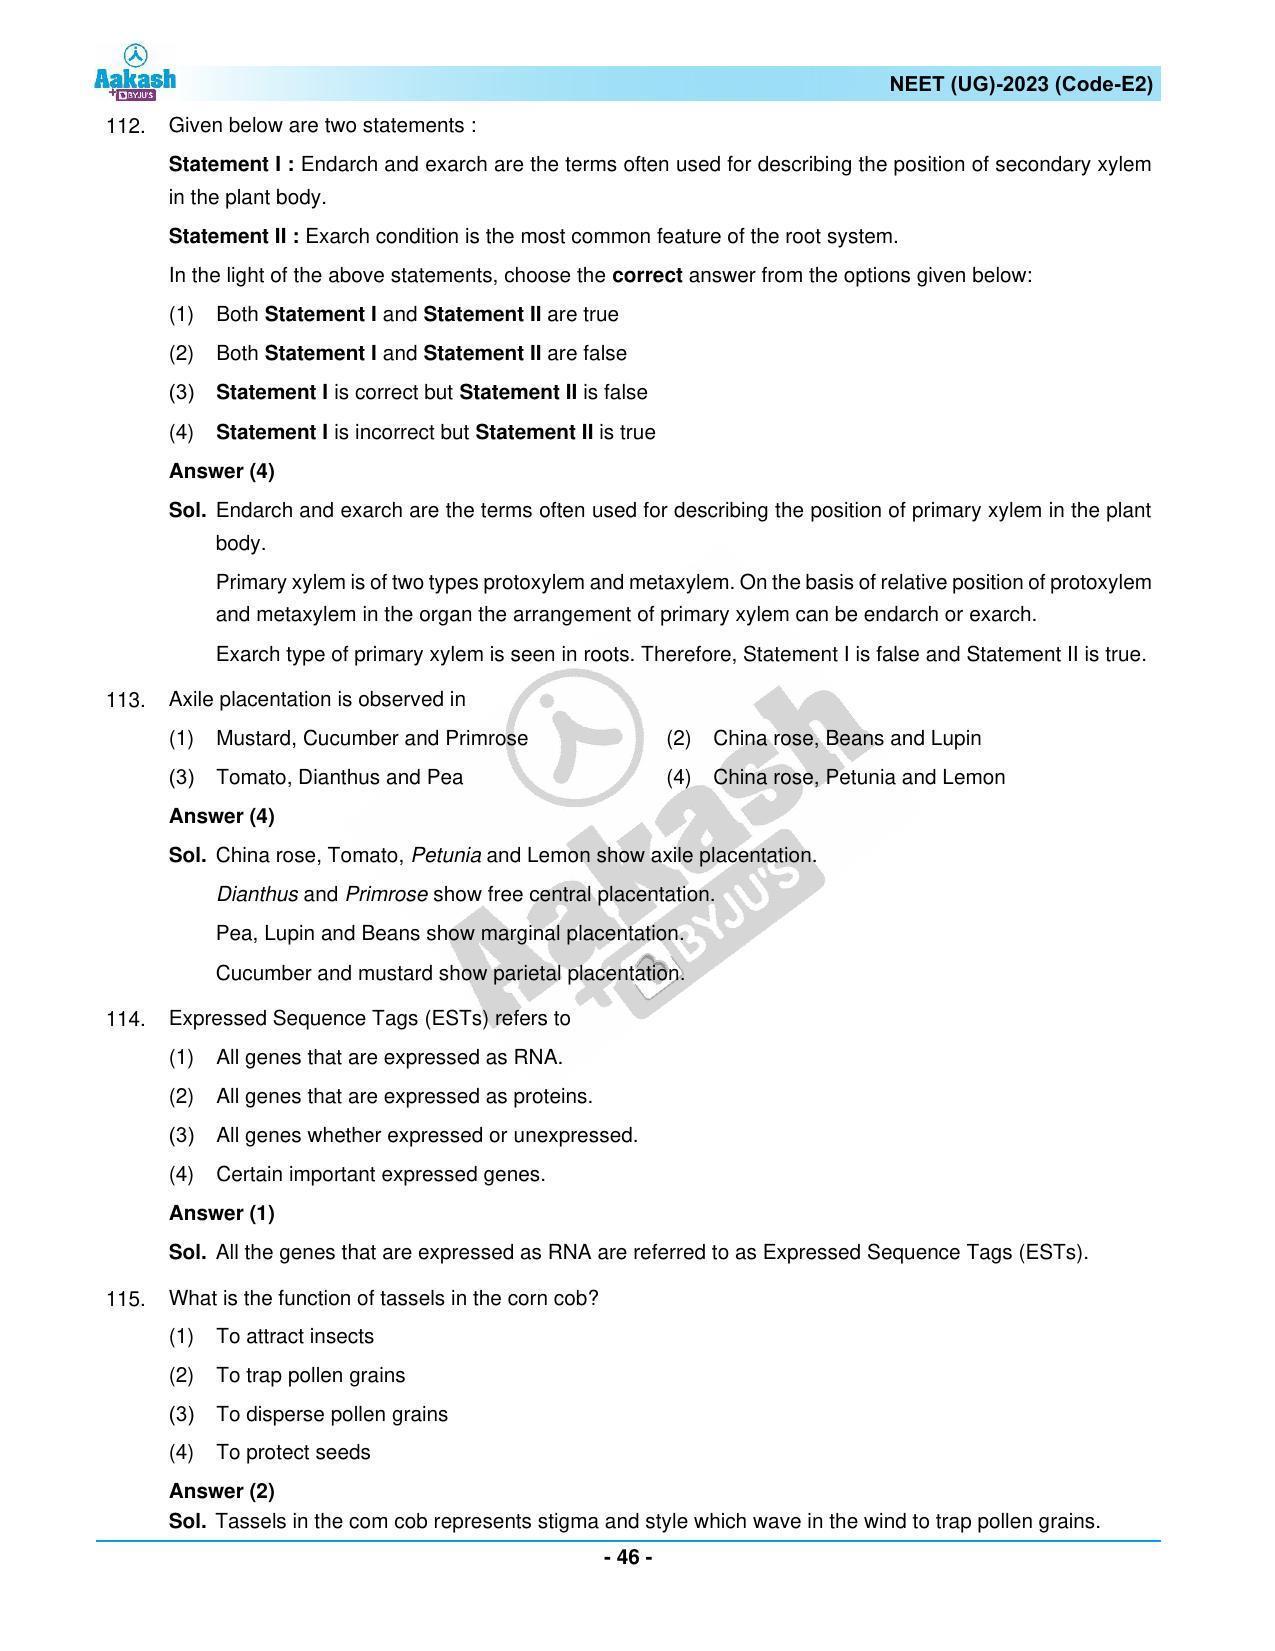 NEET 2023 Question Paper E2 - Page 46